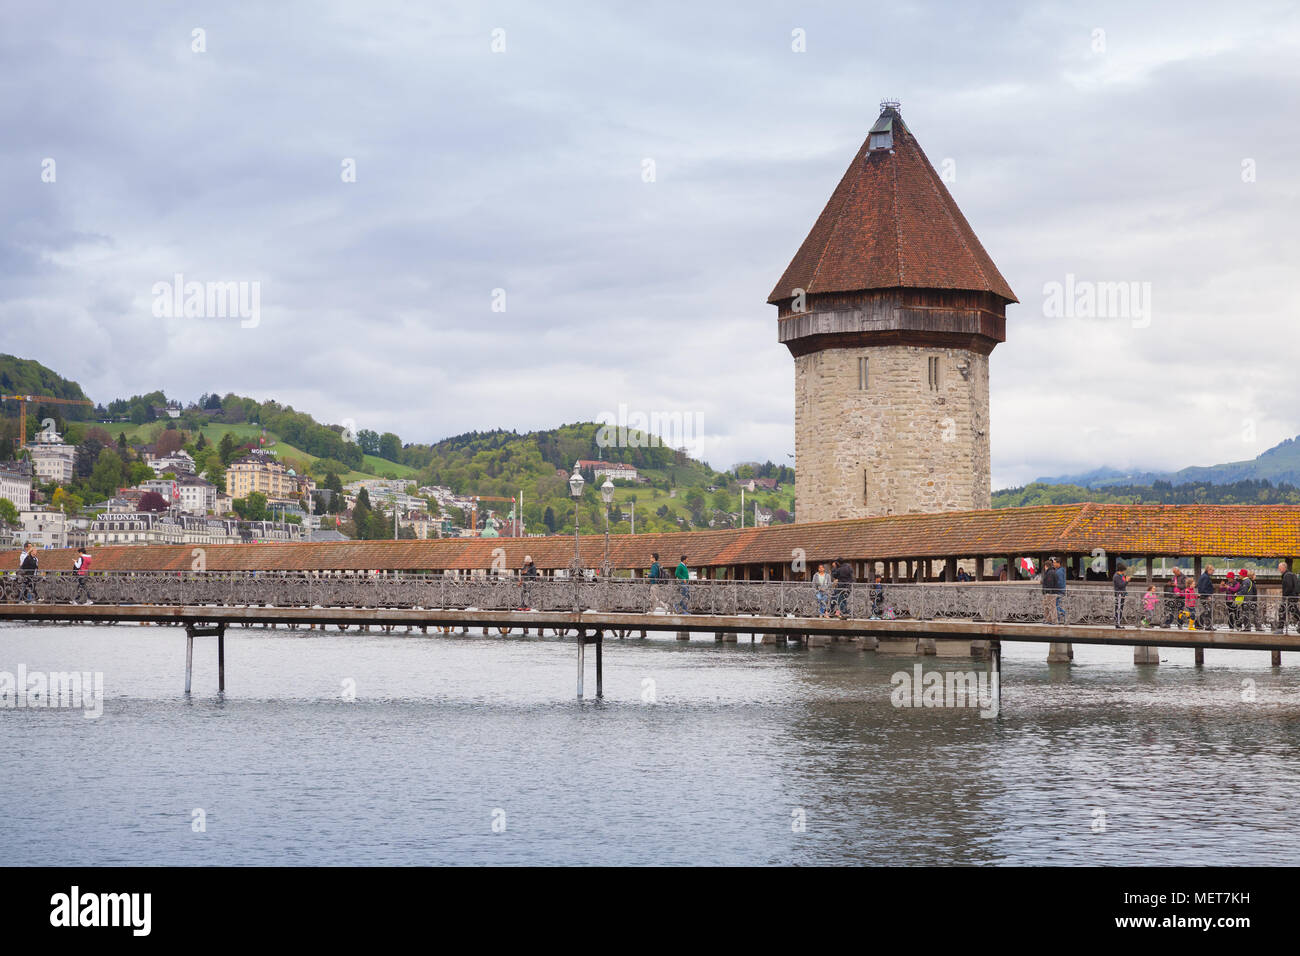 Lucerne, Suisse - le 7 mai 2017 : ville de Lucerne, Suisse centrale. Vue urbaine avec pont de la chapelle et château d'eau, une fortification du 13e cen Banque D'Images